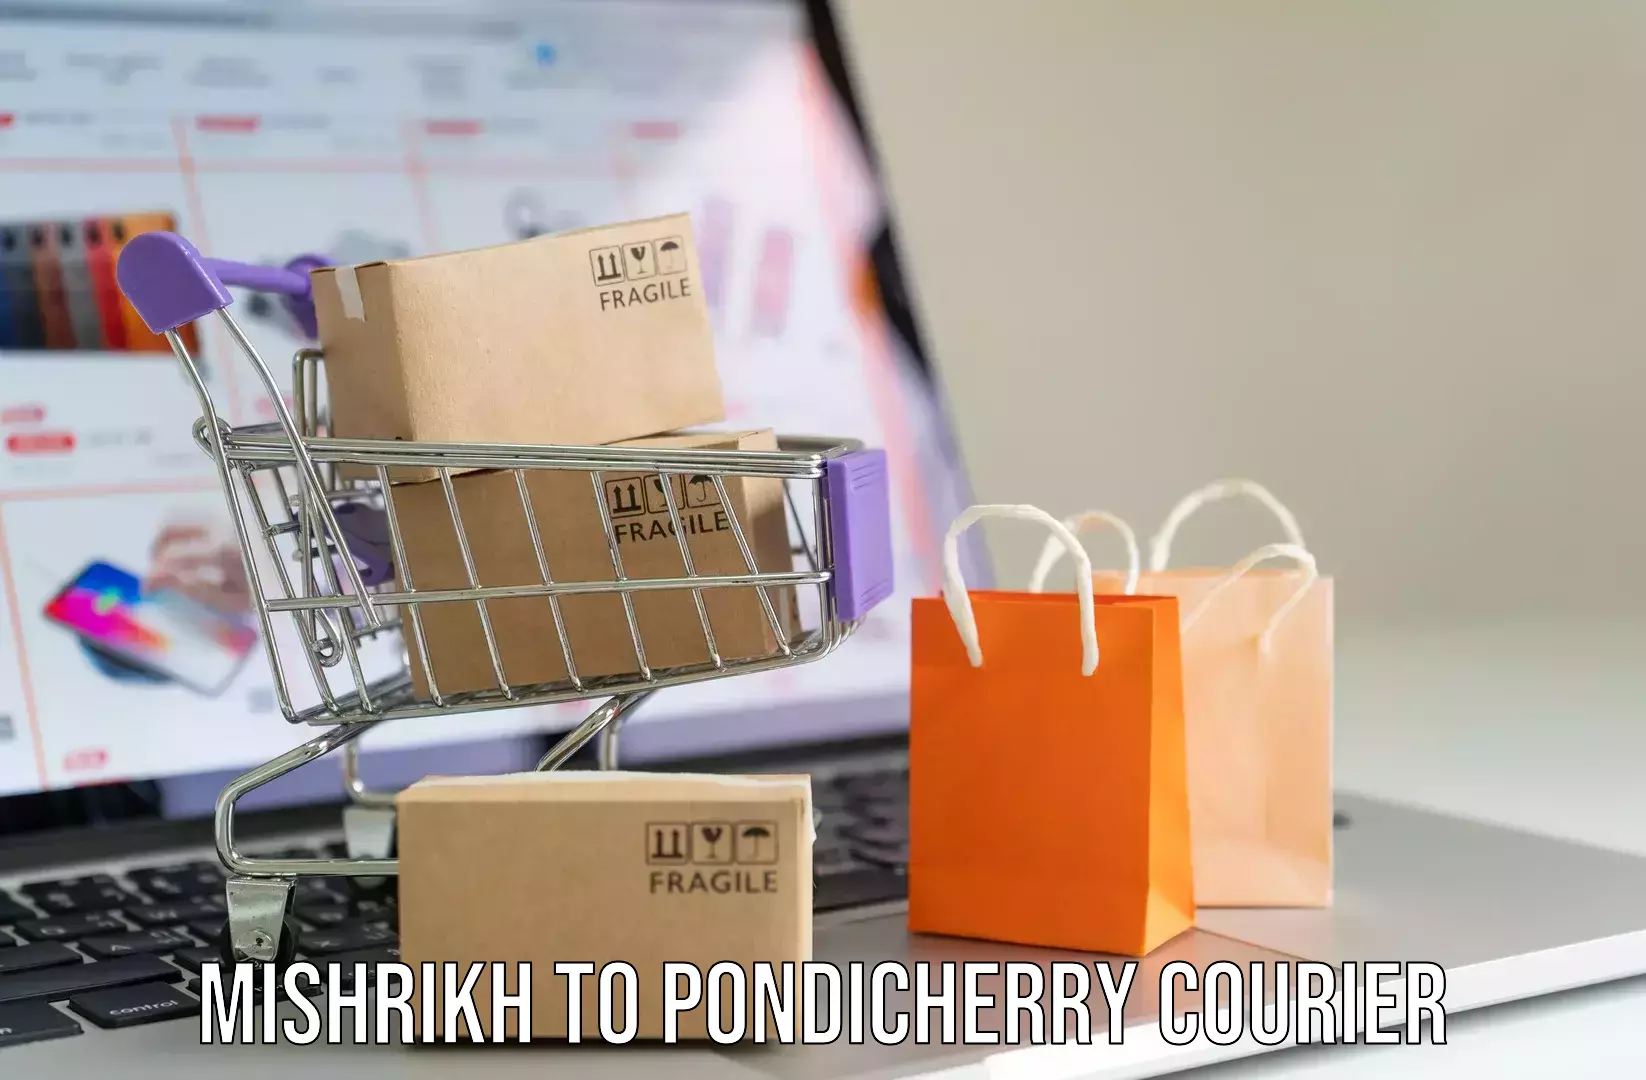 Luggage delivery news Mishrikh to Pondicherry